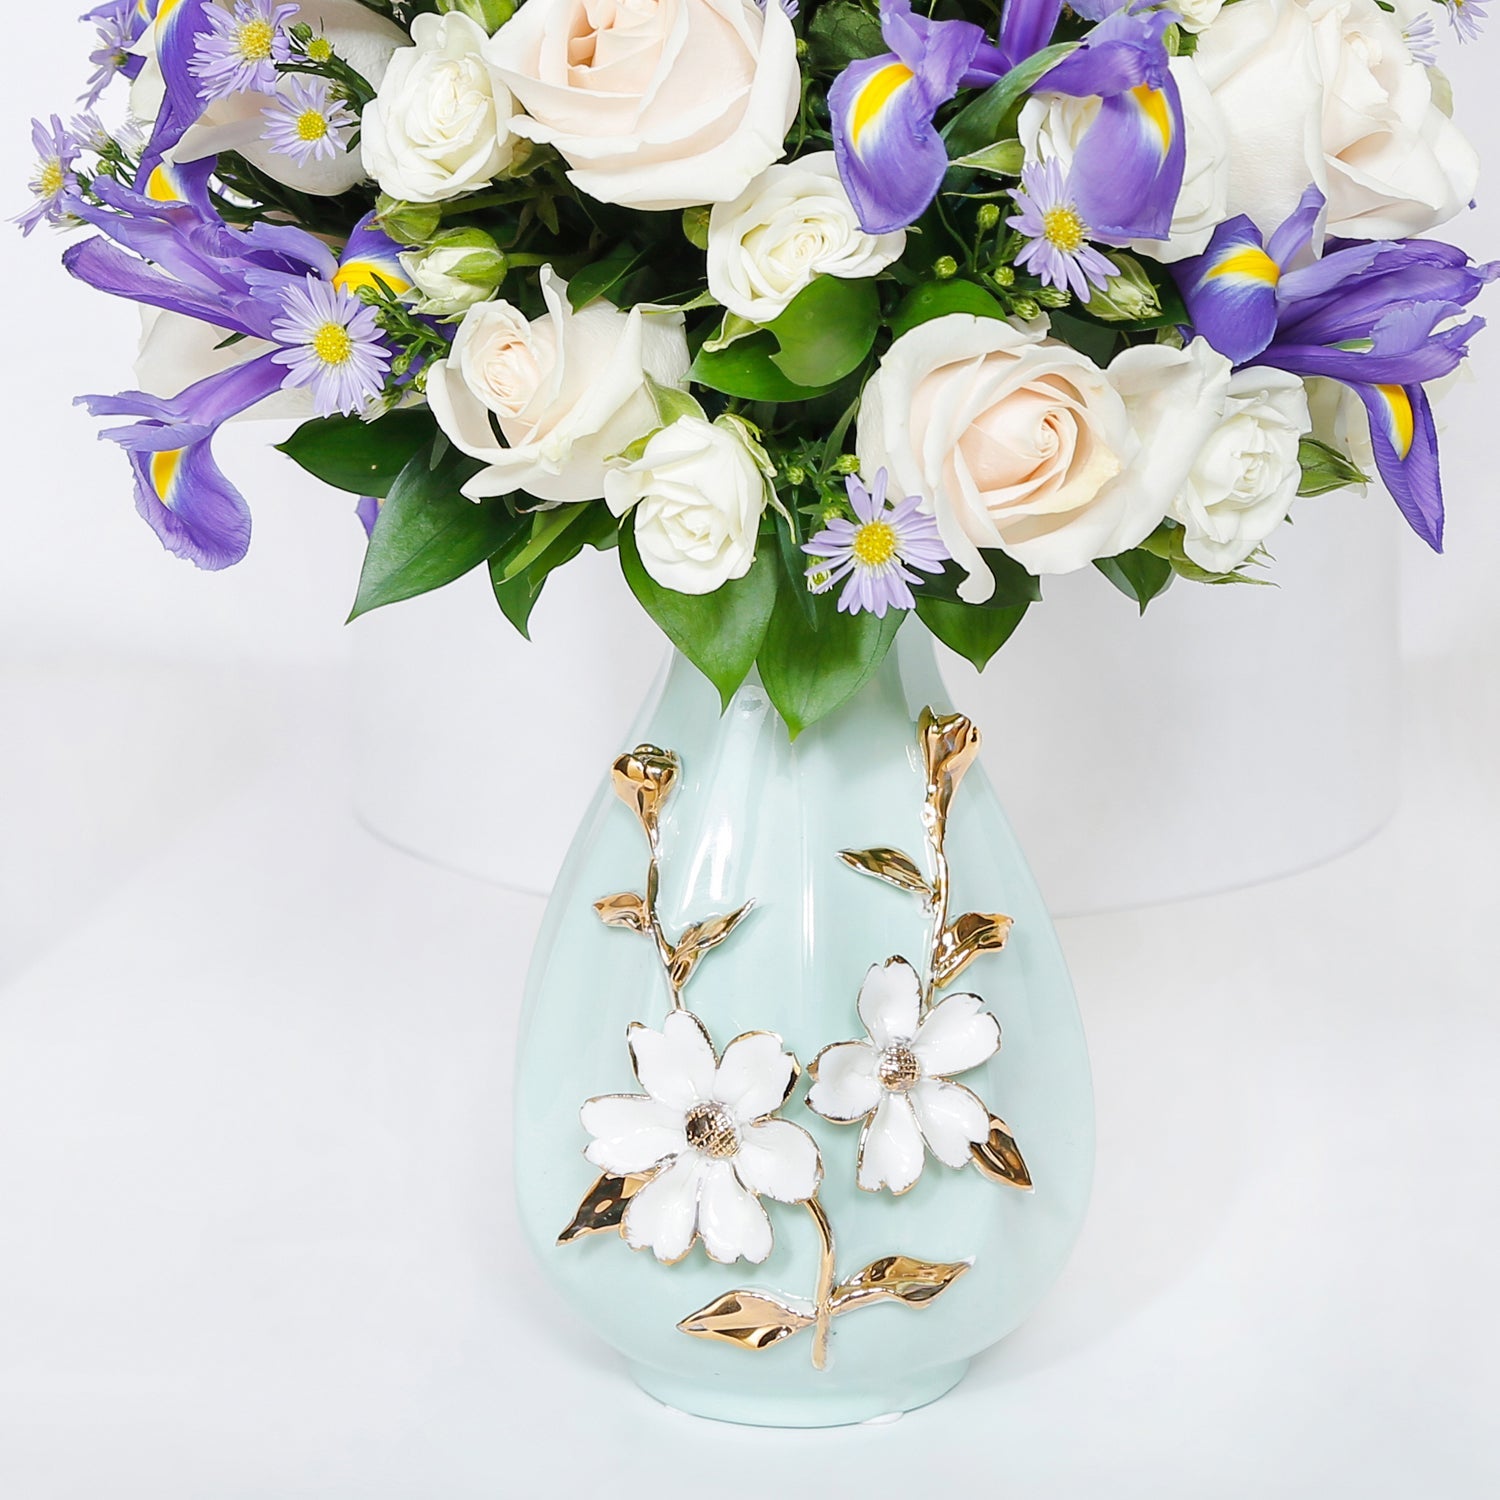 Iris & Roses in Premium Vase